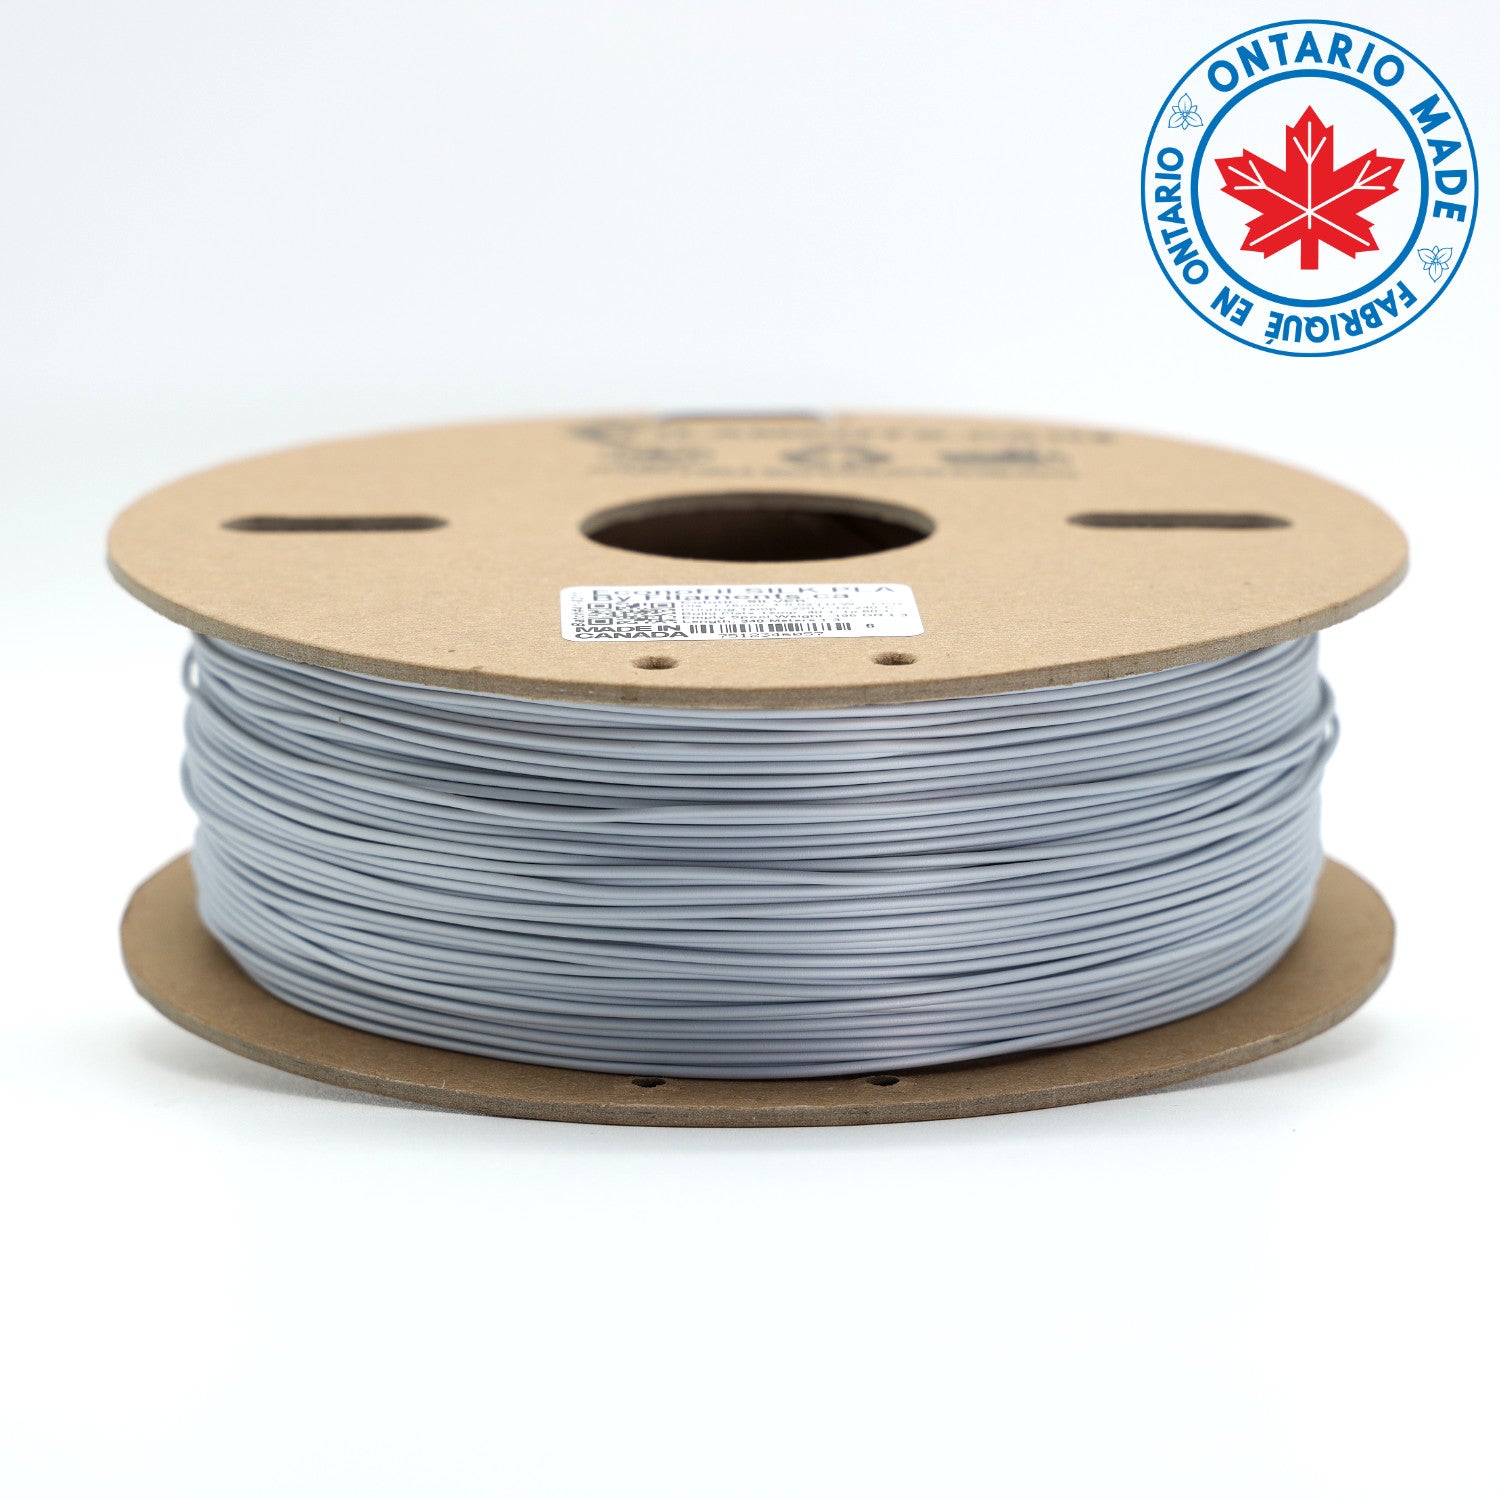 http://filaments.ca/cdn/shop/files/EconoFil-PLA-Silk-Silver-3D-Printing-Filament-Canada.jpg?v=1688745917